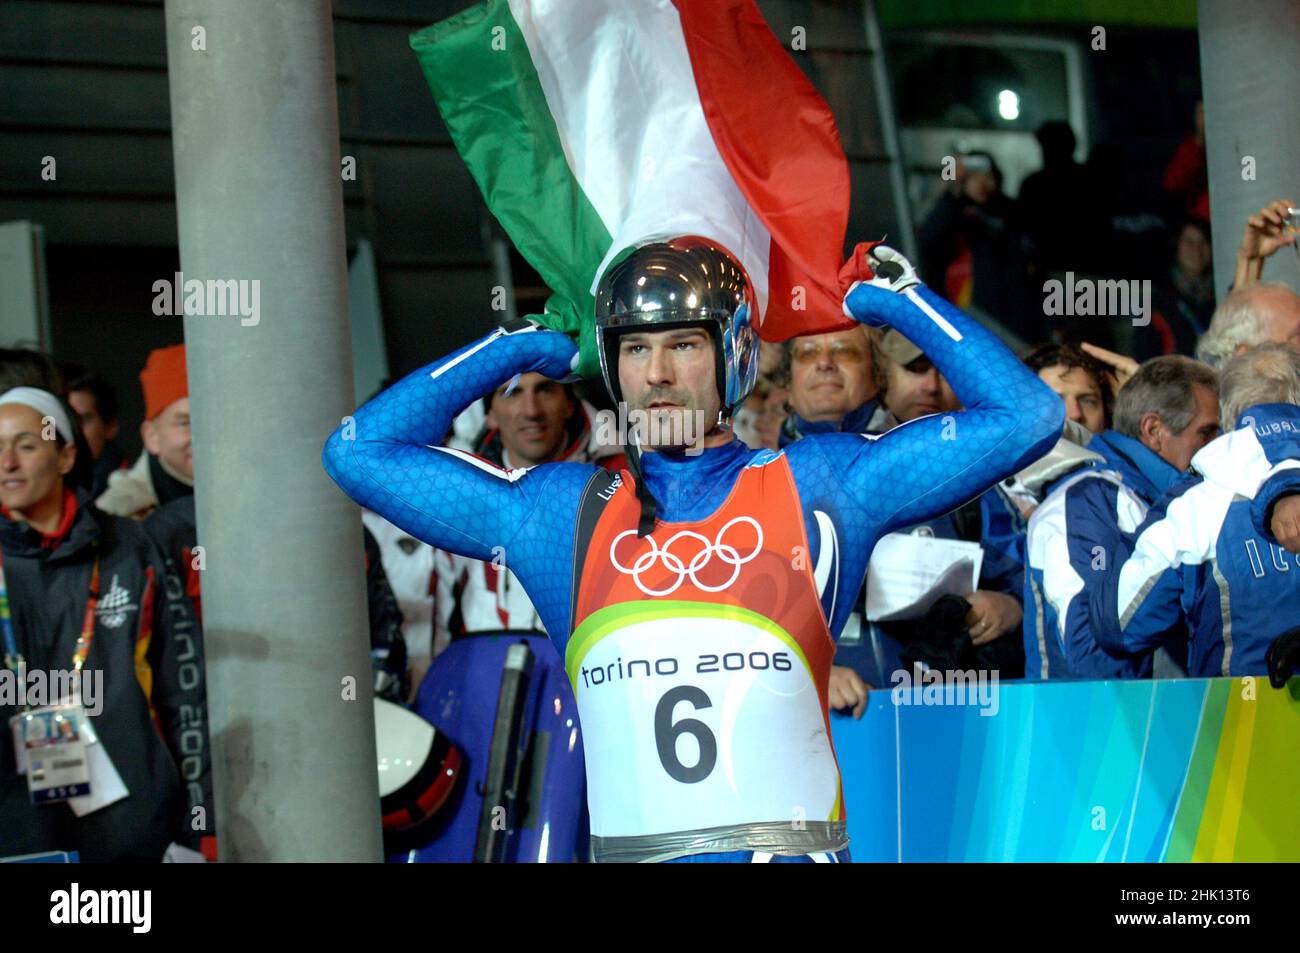 Cesana San Sicario, Turin Italien 2006-02-12: Turin 2006 Olympische Winterspiele, Preisverleihung des Rennens Roge, Armin Zöggeler, Italien, feiert den ersten Platz im Ziel des Rennens Stockfoto